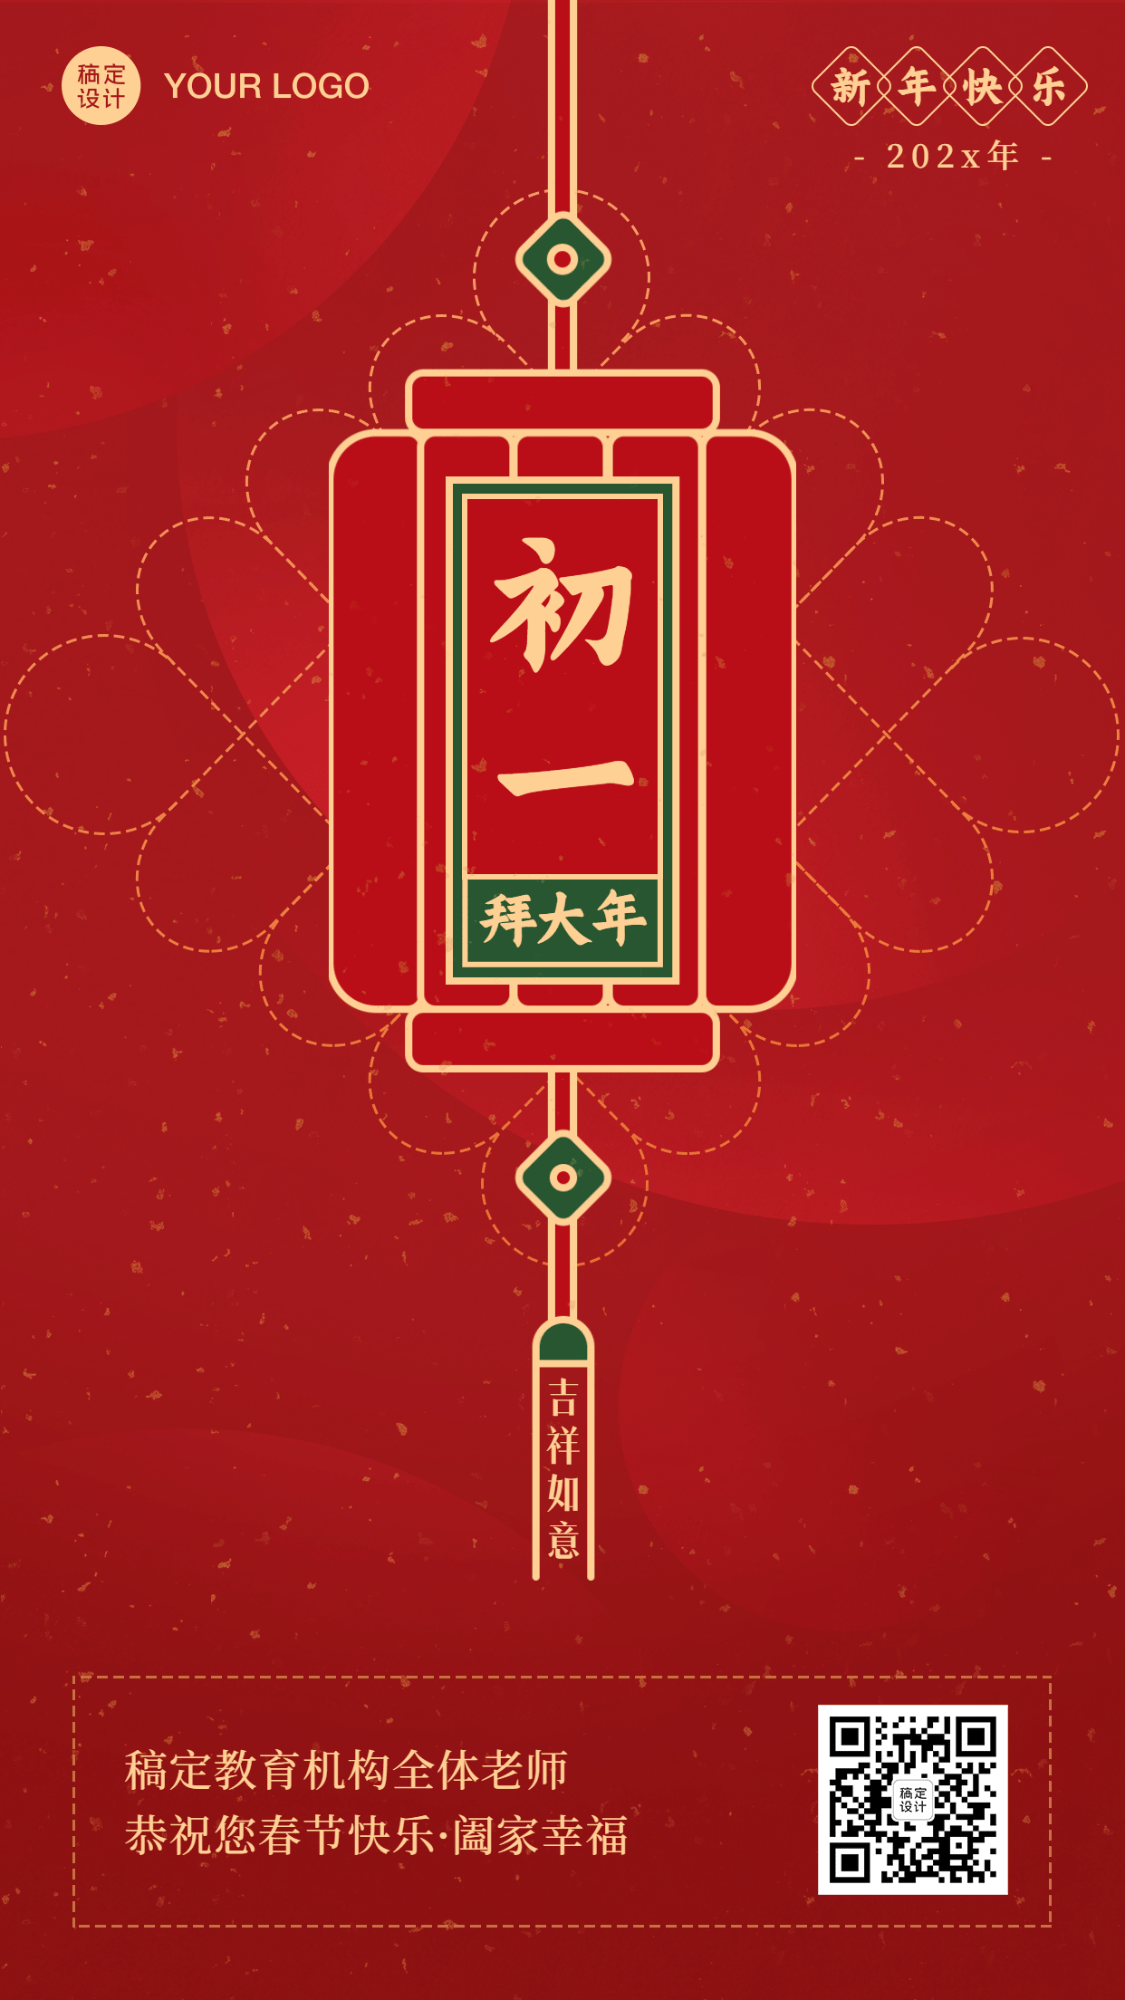 春节新年正月初一祝福海报预览效果